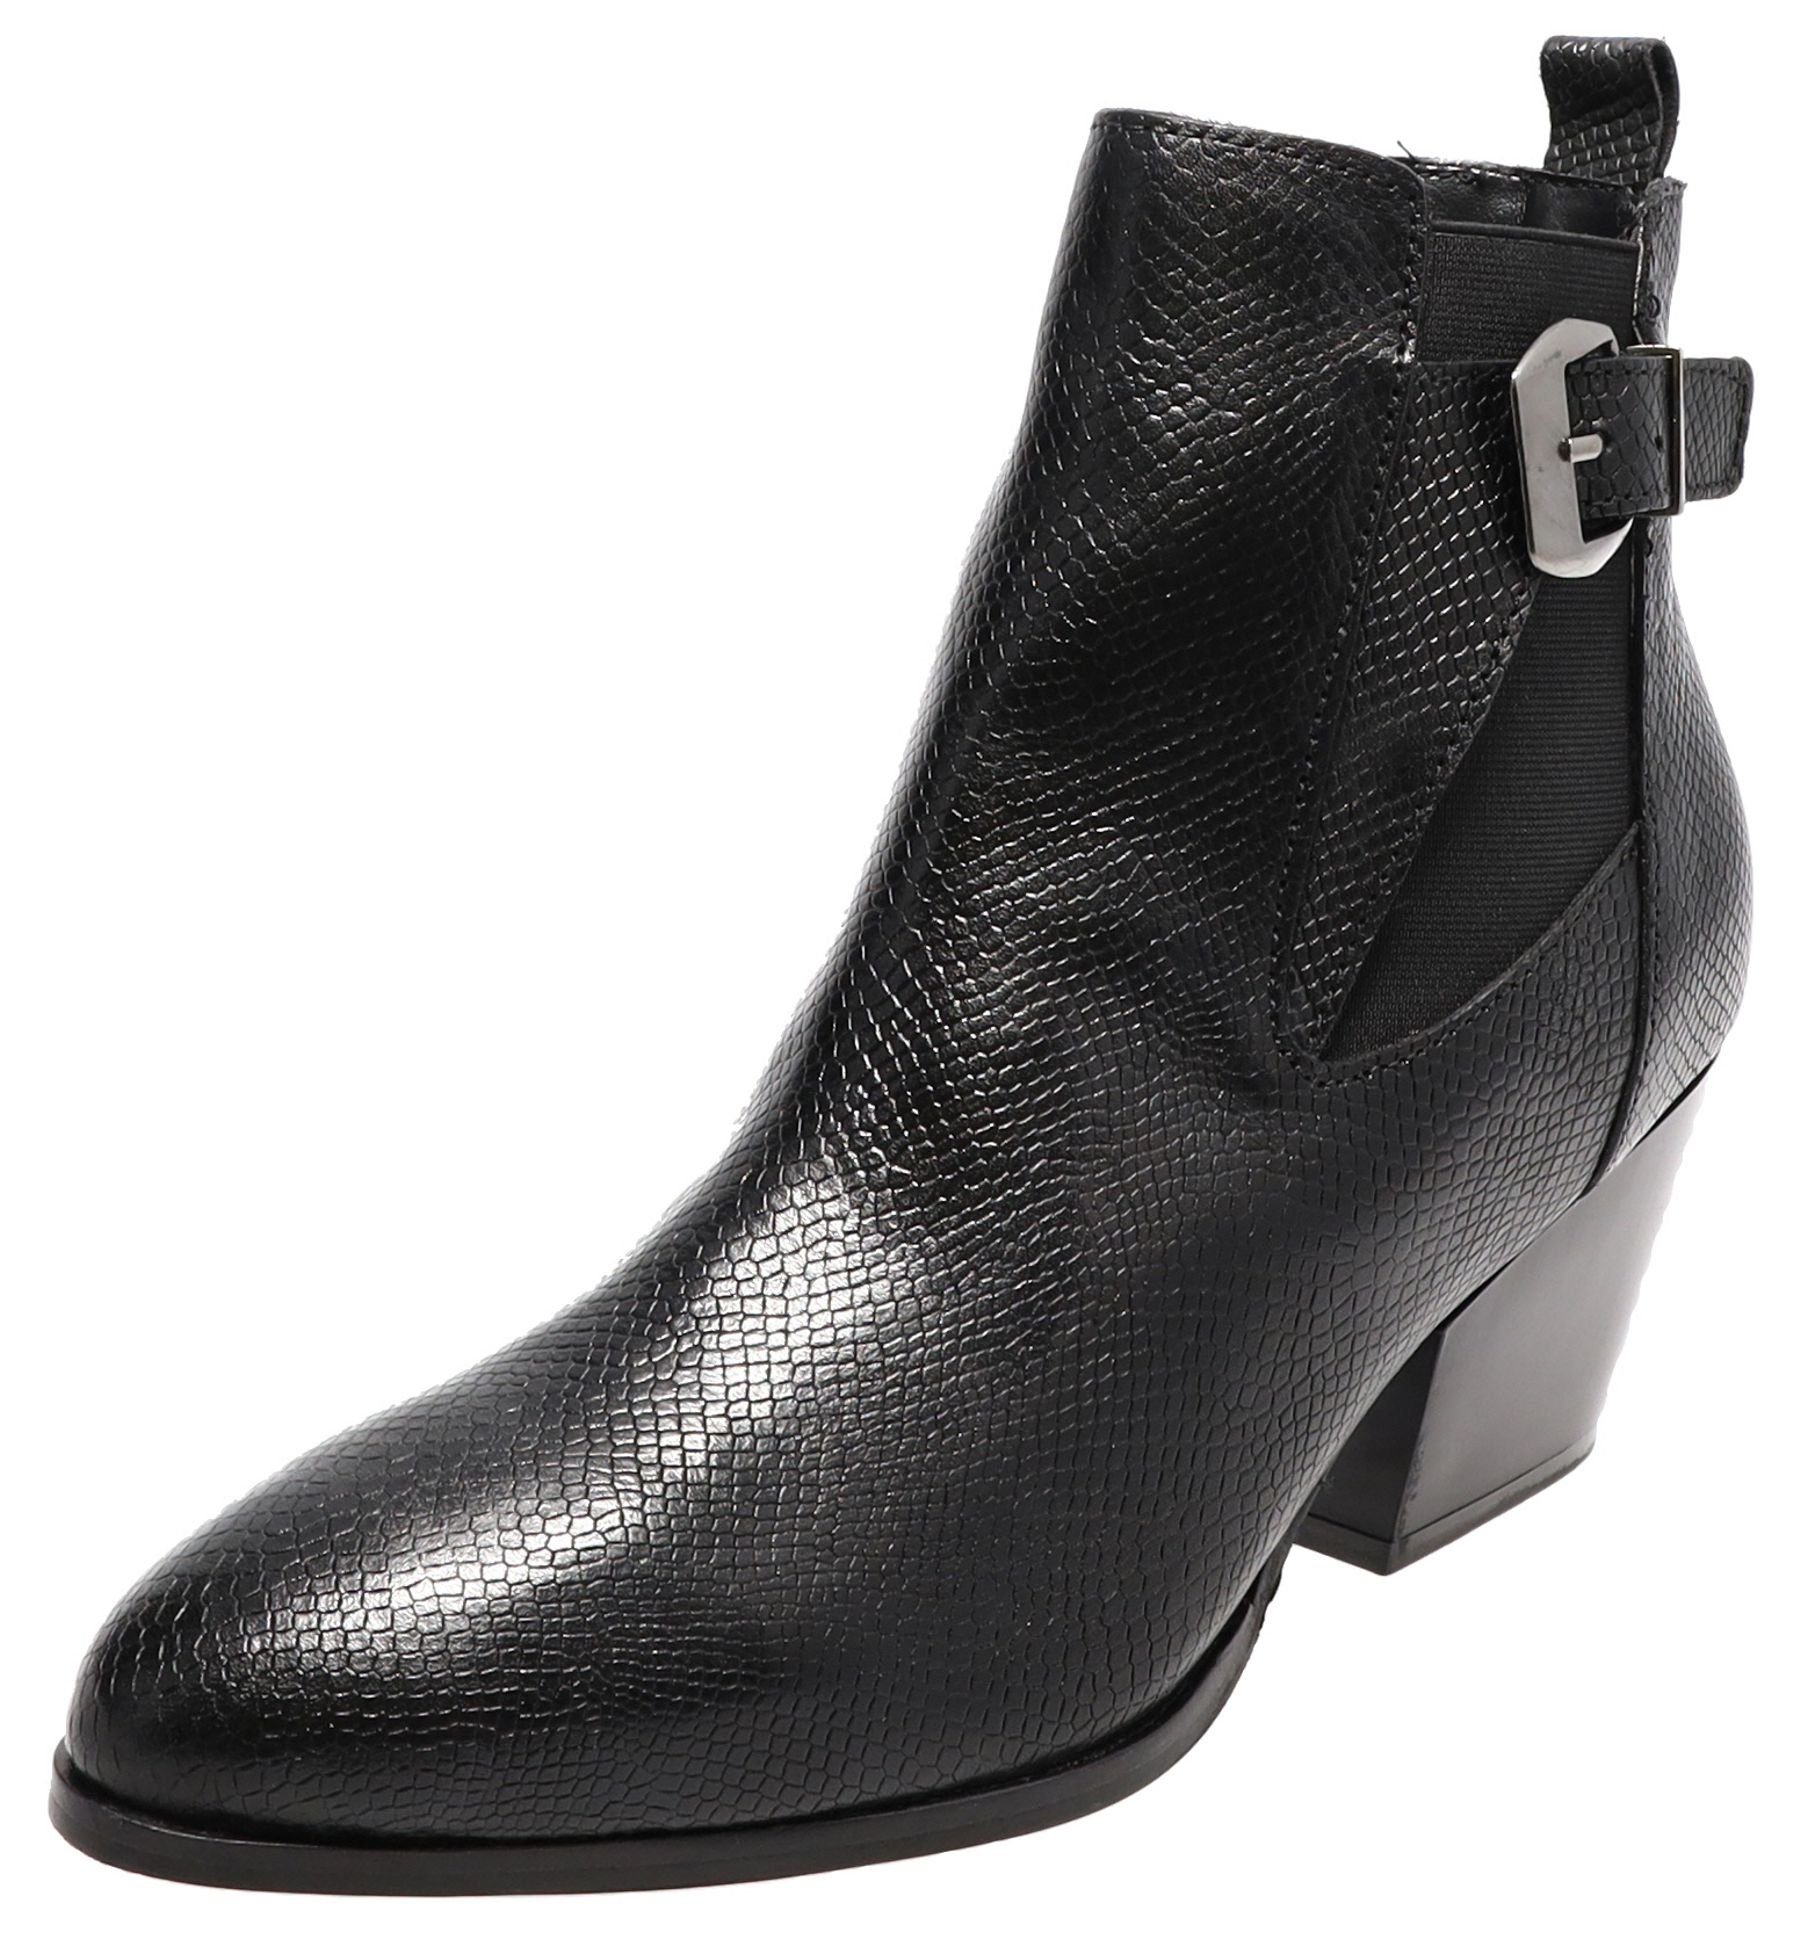 Buffalo Madita Black Damen Stiefelette Ankle Boots Schwarz Stiefelette Online Kaufen Otto